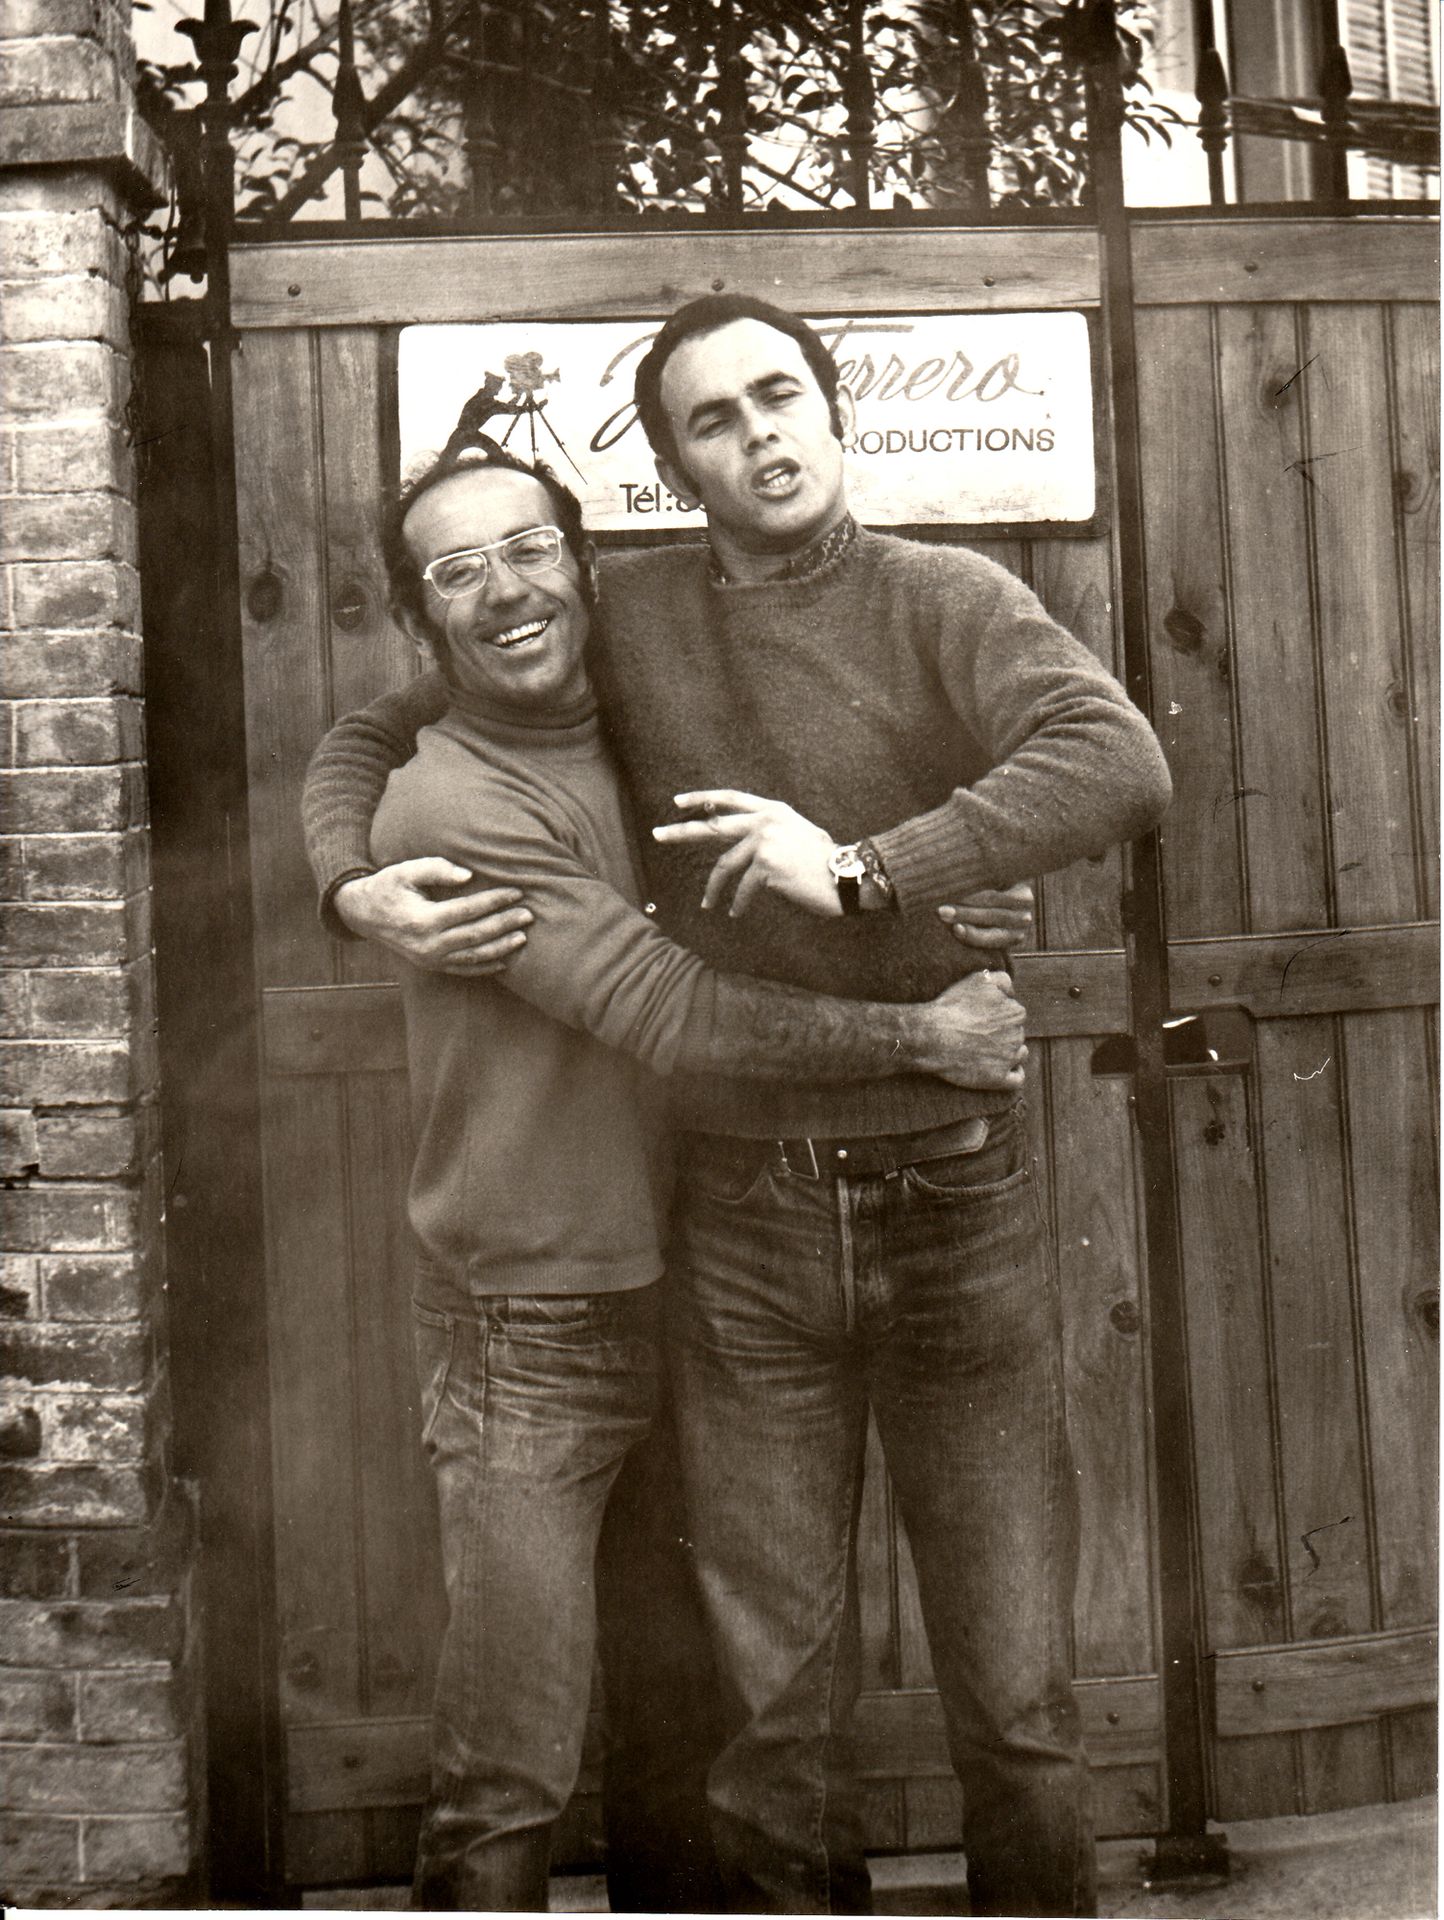 [FARHI] Jean FERRERO 让-费雷罗和让-克劳德-法里在费雷罗工作室前，1971年
复古银质照片
背面有费雷罗照片印章
24 x 18 cm